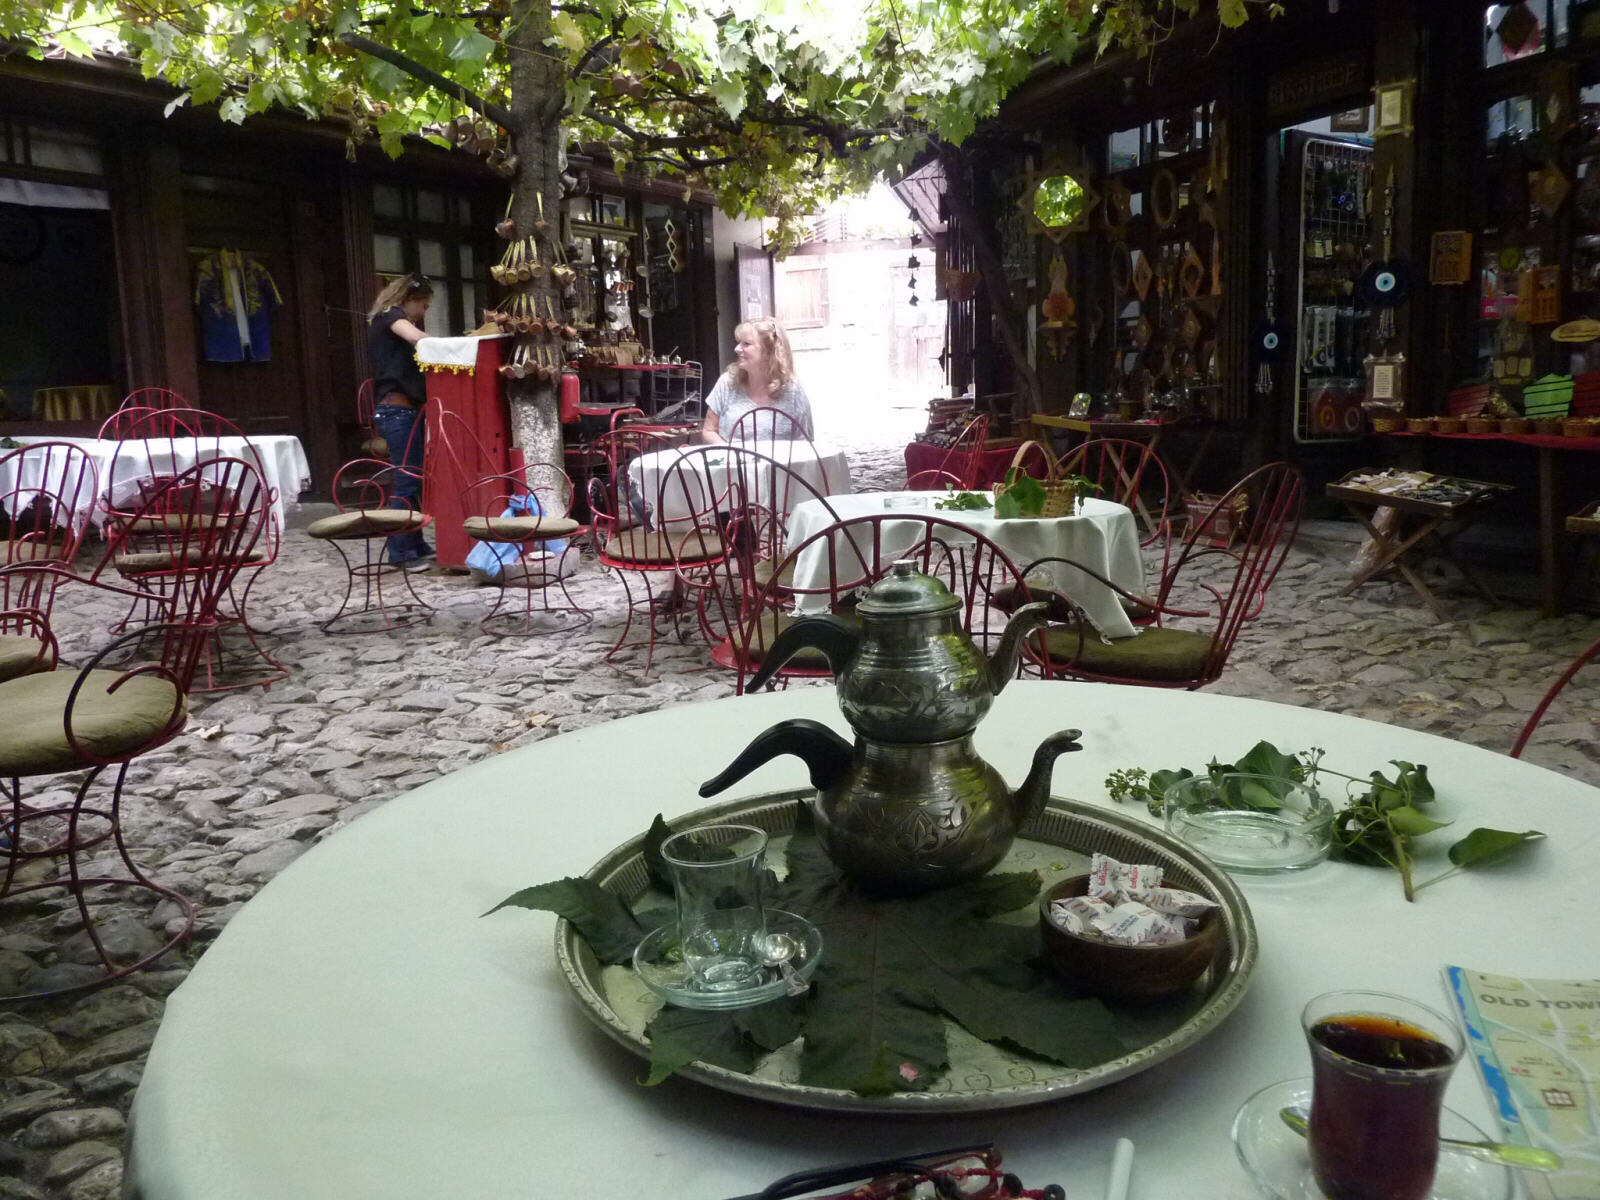 The tea shop in Arastasi Bazaar, Safranbolu, Turkey